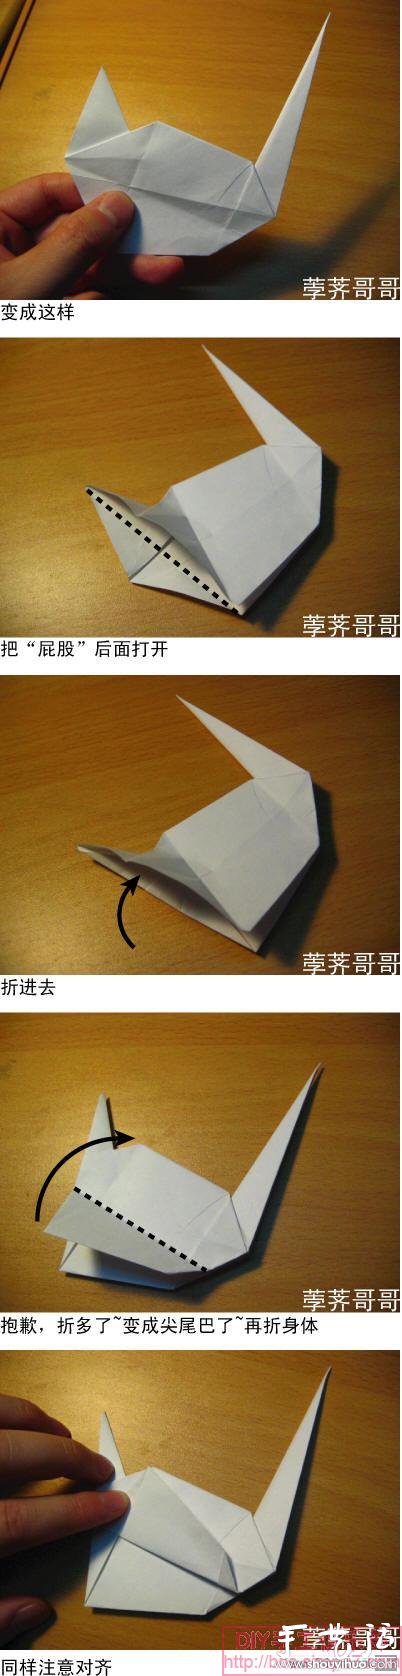 美剧《越狱》里的纸鹤折纸方法